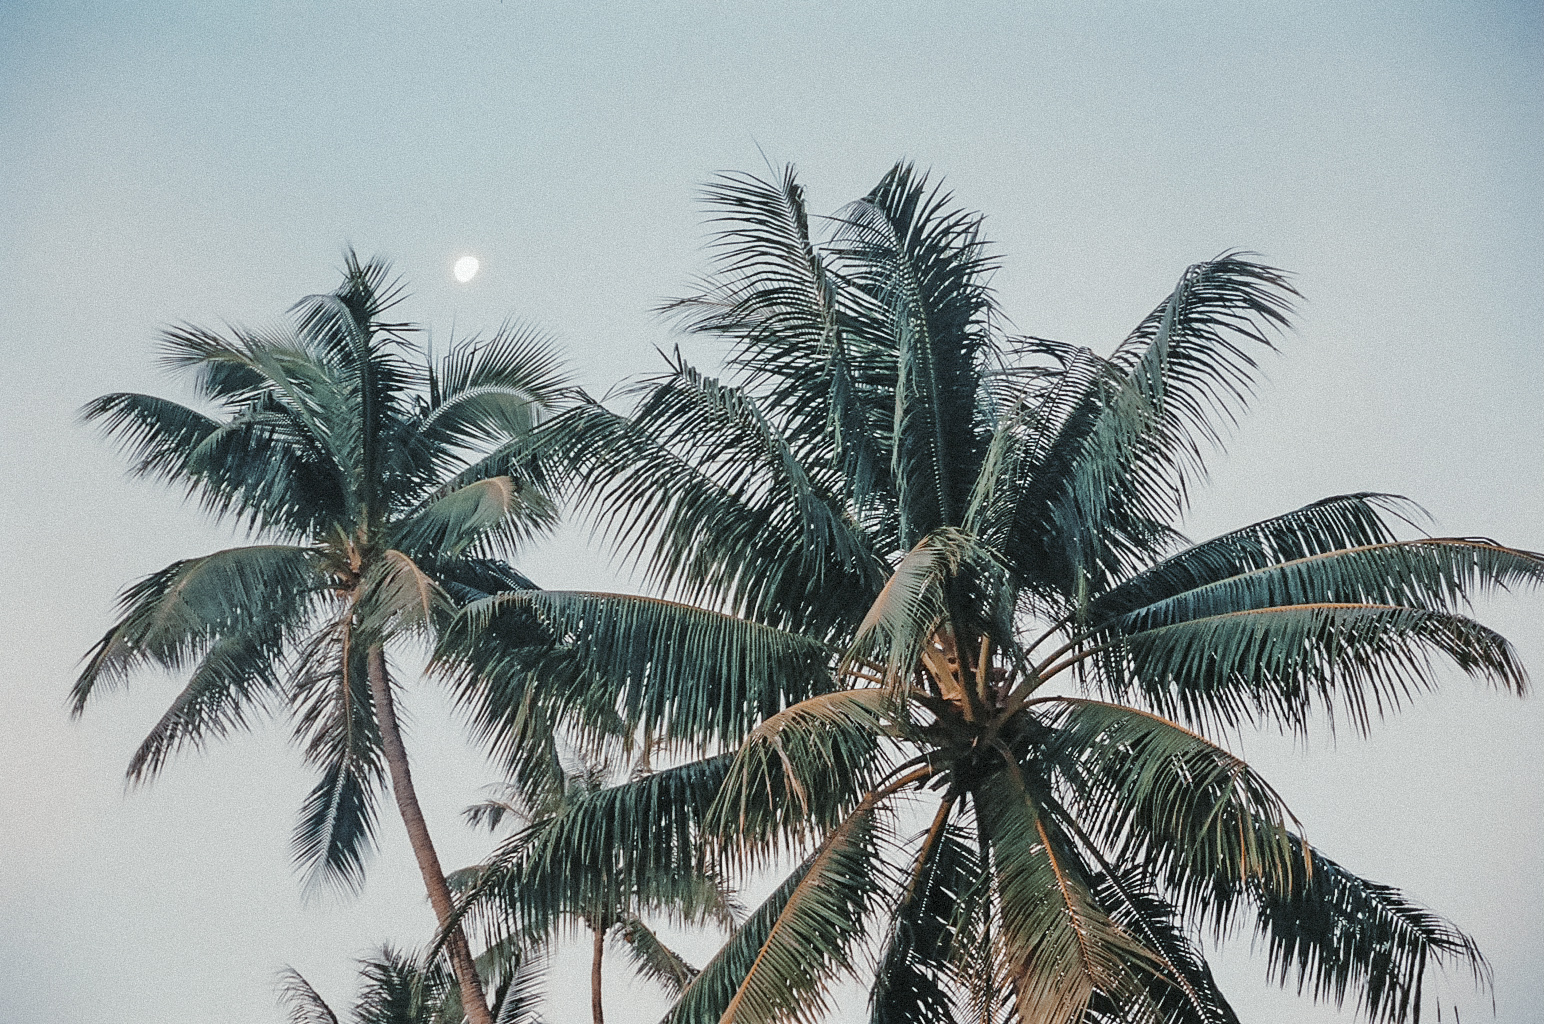 palm trees / tahiti travel photography / kelly fiance creative